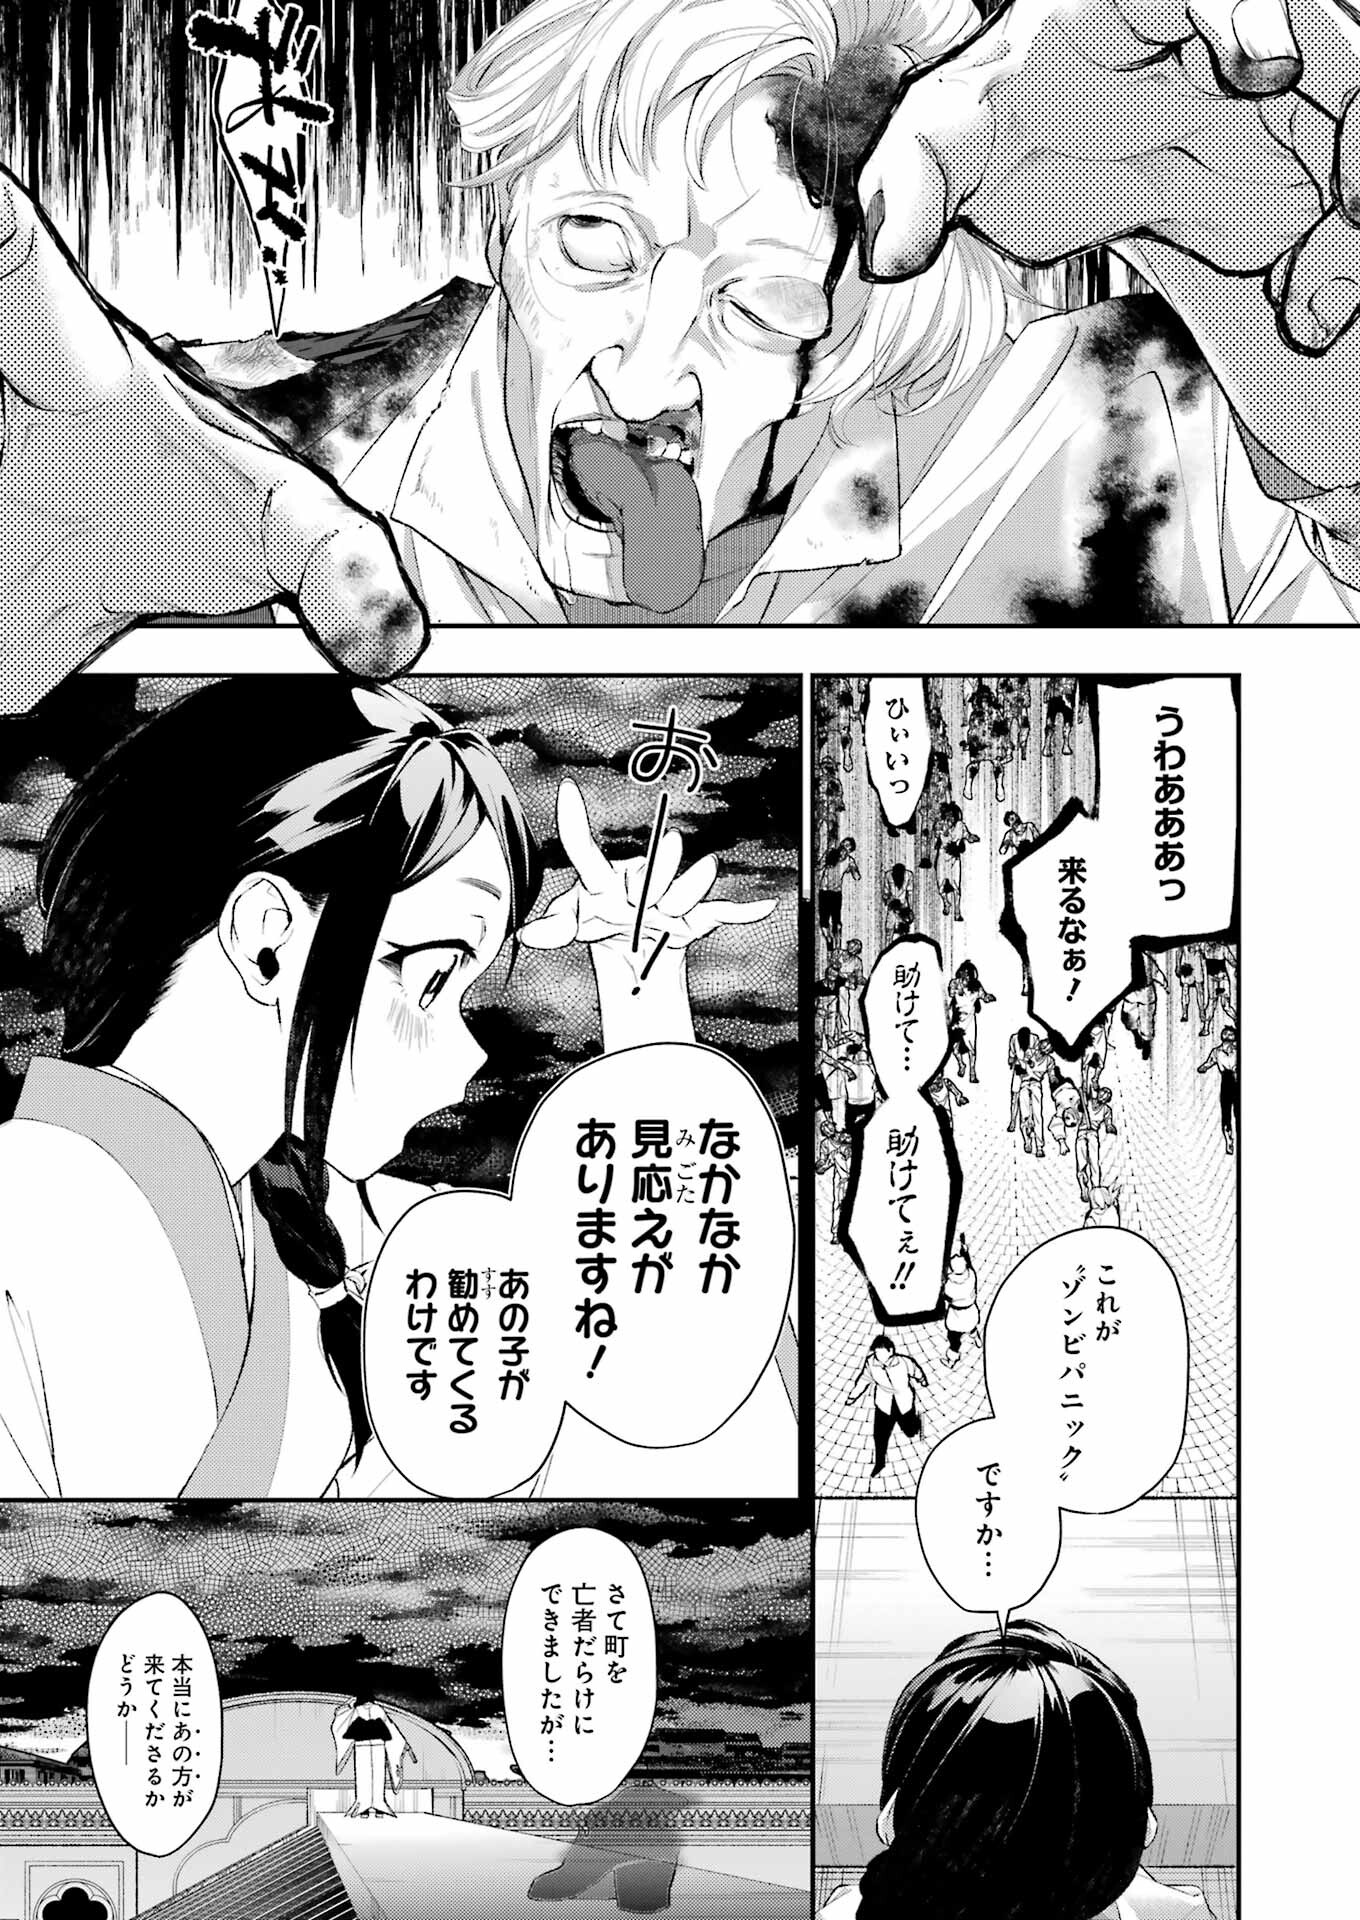 Shokei Shoujo no Ikiru Michi - Chapter 46 - Page 3